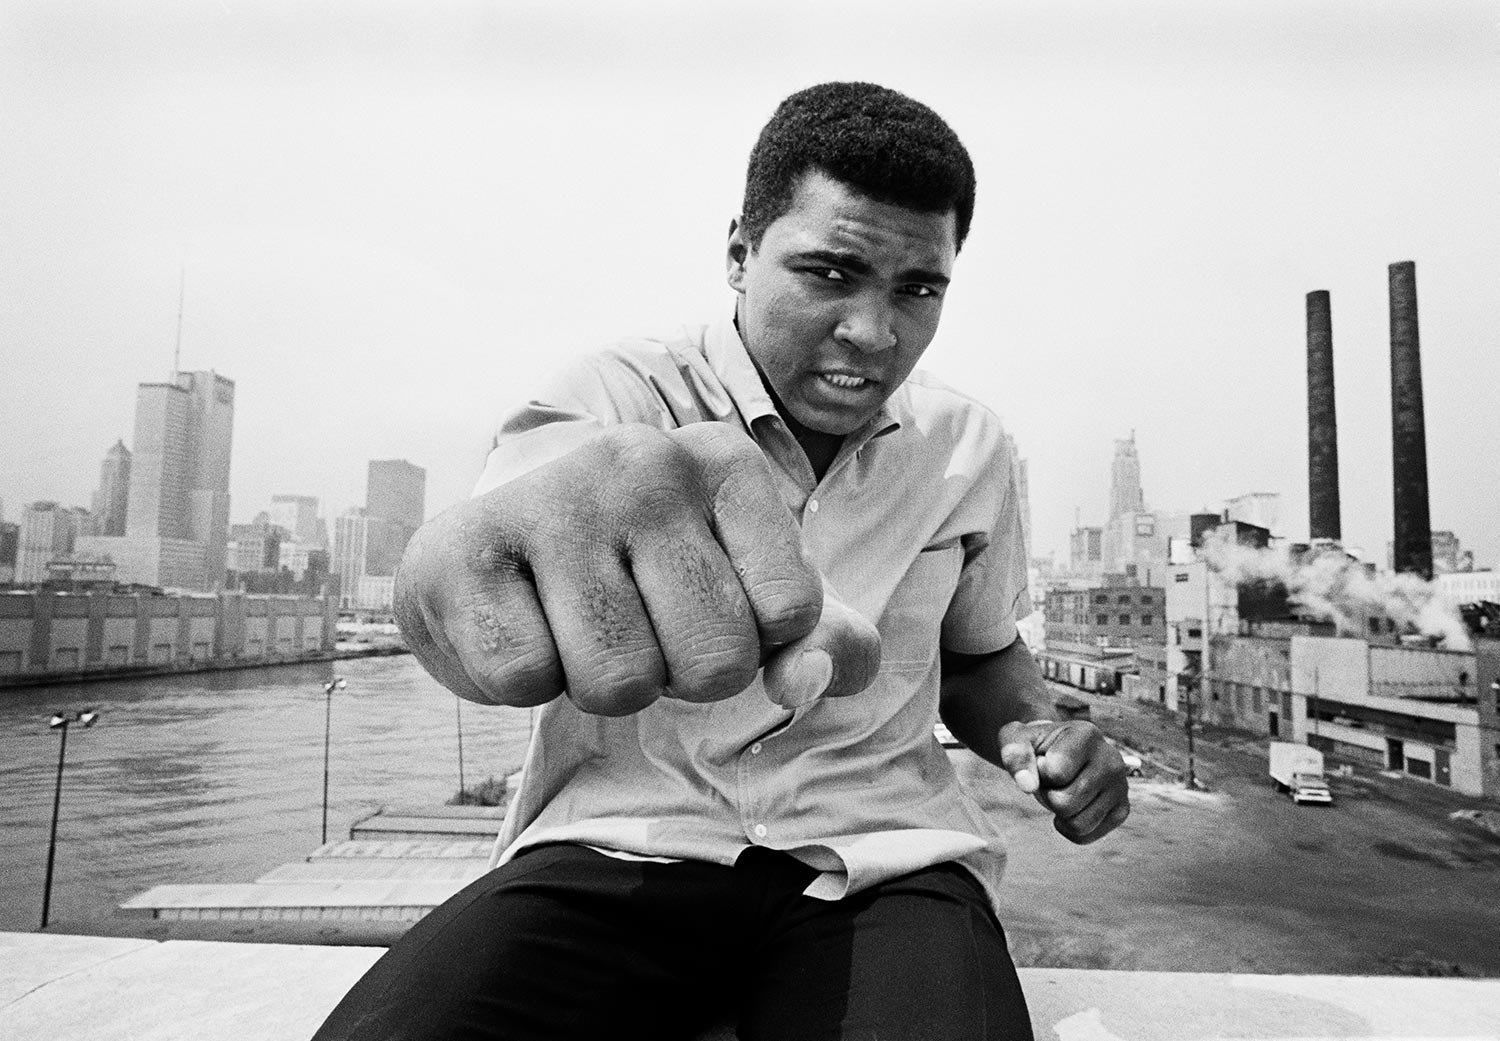 Thomas Hoepker, Chicago, Illinois, 1966, Muhammad Ali, Boxweltmeister im Schwergewicht, auf einer Brücke über den Chicago River